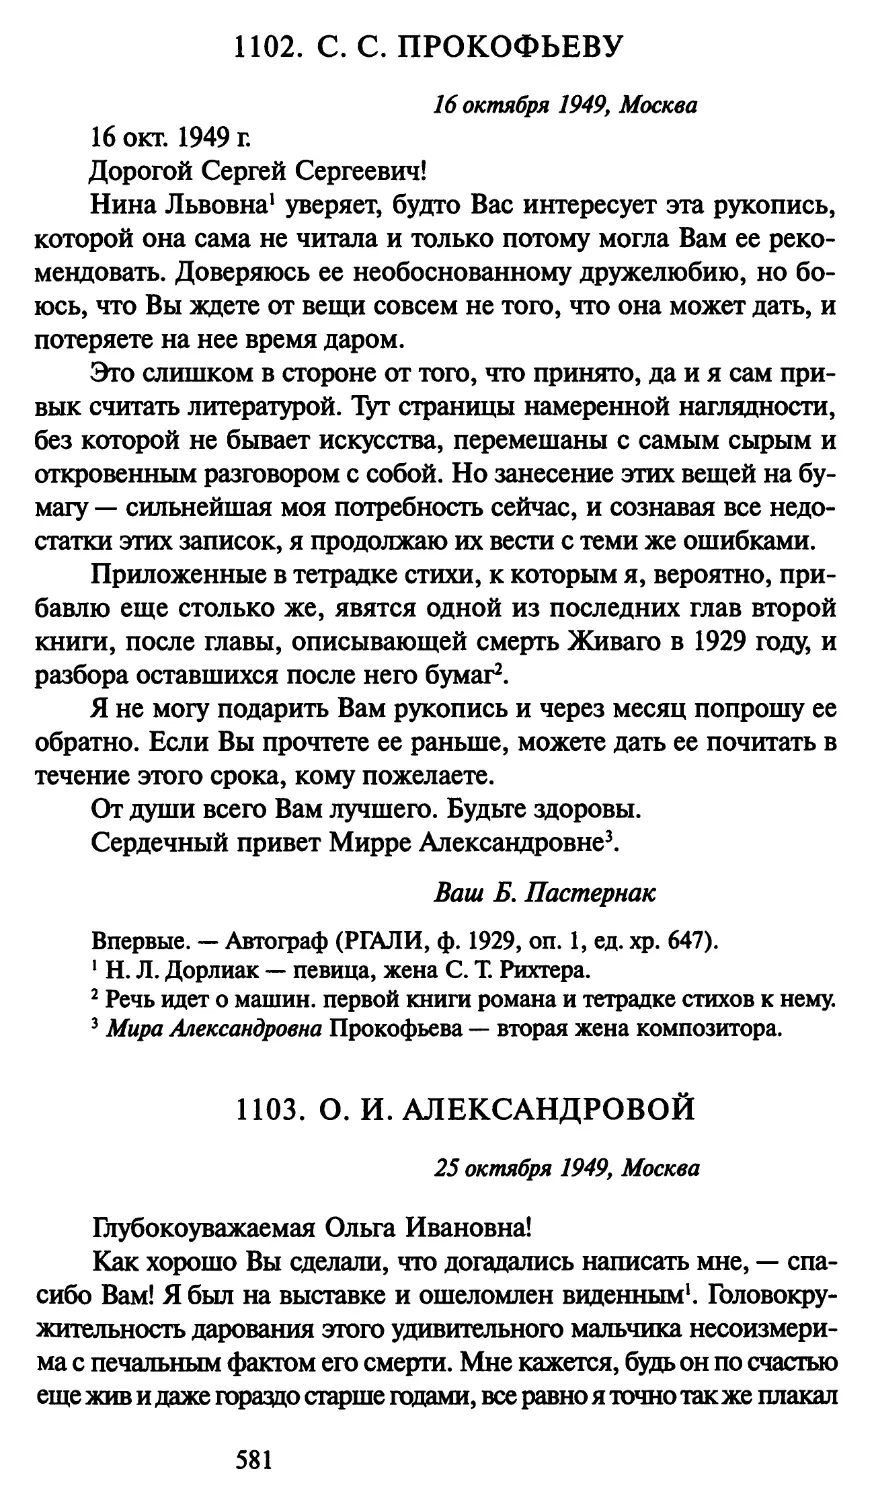 1103. О. И. Александровой 25 октября 1949